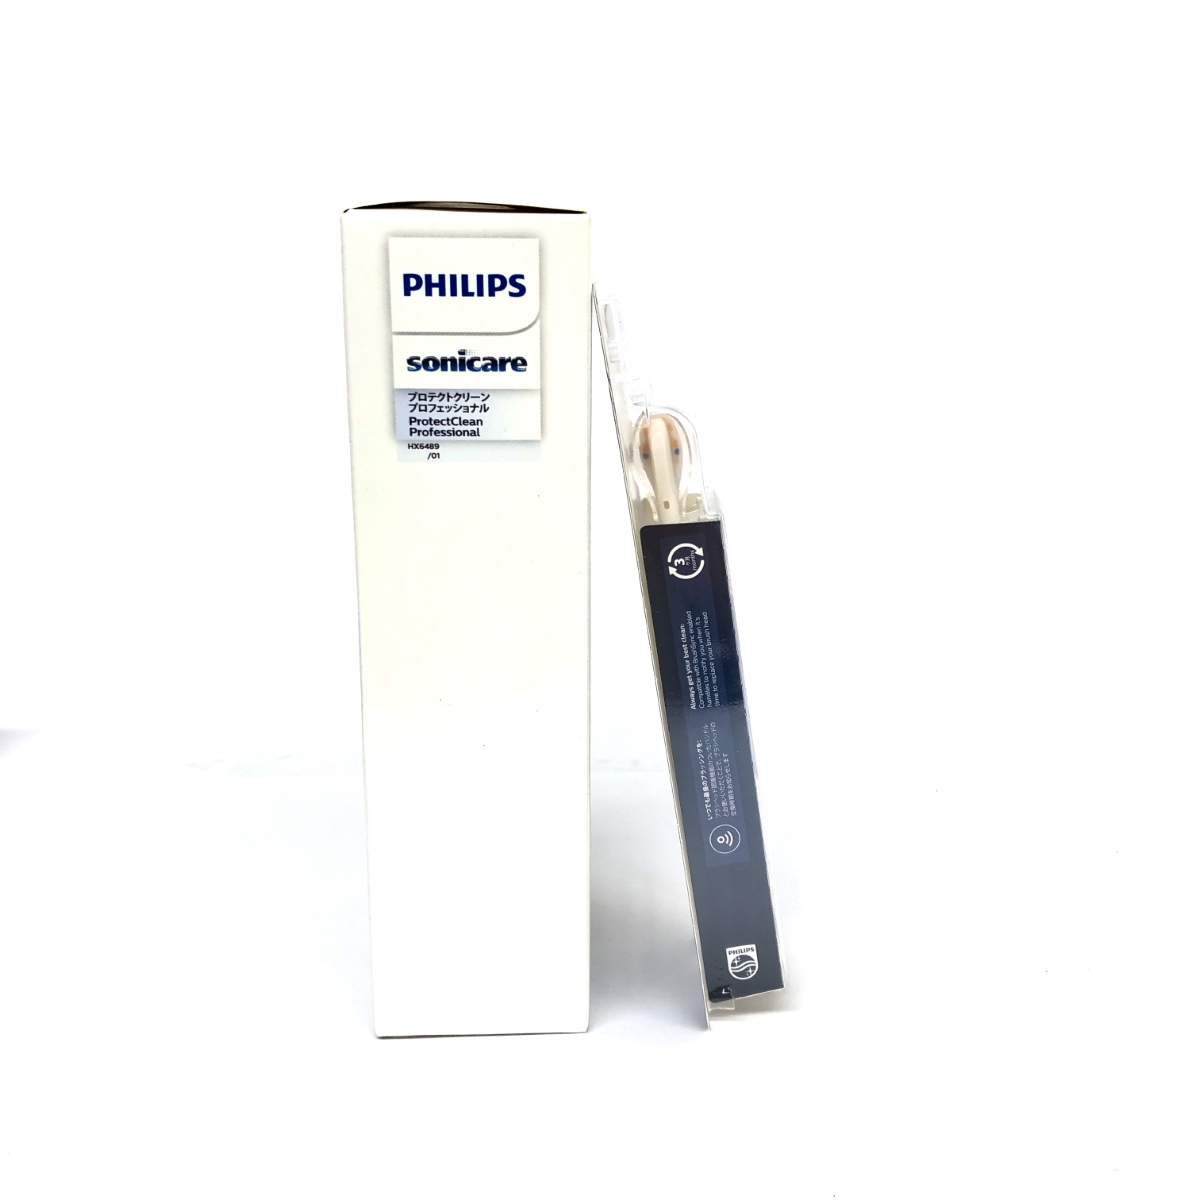 フィリップス PHILIPS プロテクトクリーン プロフェッショナル 未使用品-